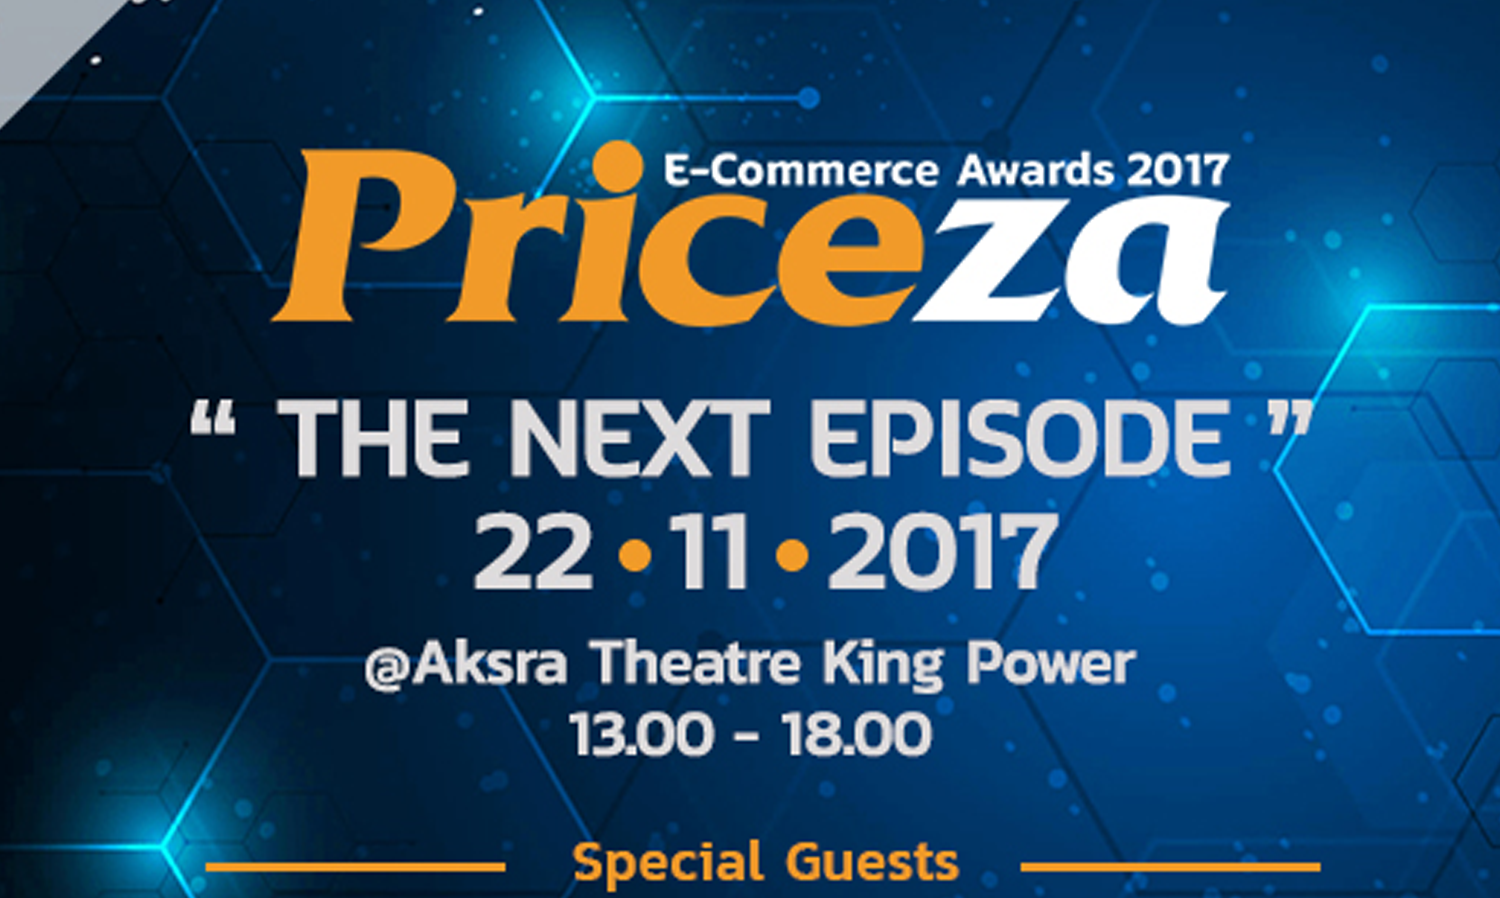 “ไพรซ์ซ่า” ลุยจัดงาน Priceza E-Commerce Awards 2017 พุธ 22 พ.ย.นี้  ชวนลงทะเบียนเข้างานล่วงหน้า อัพเดตเทรนด์ความรู้ e-Commerce